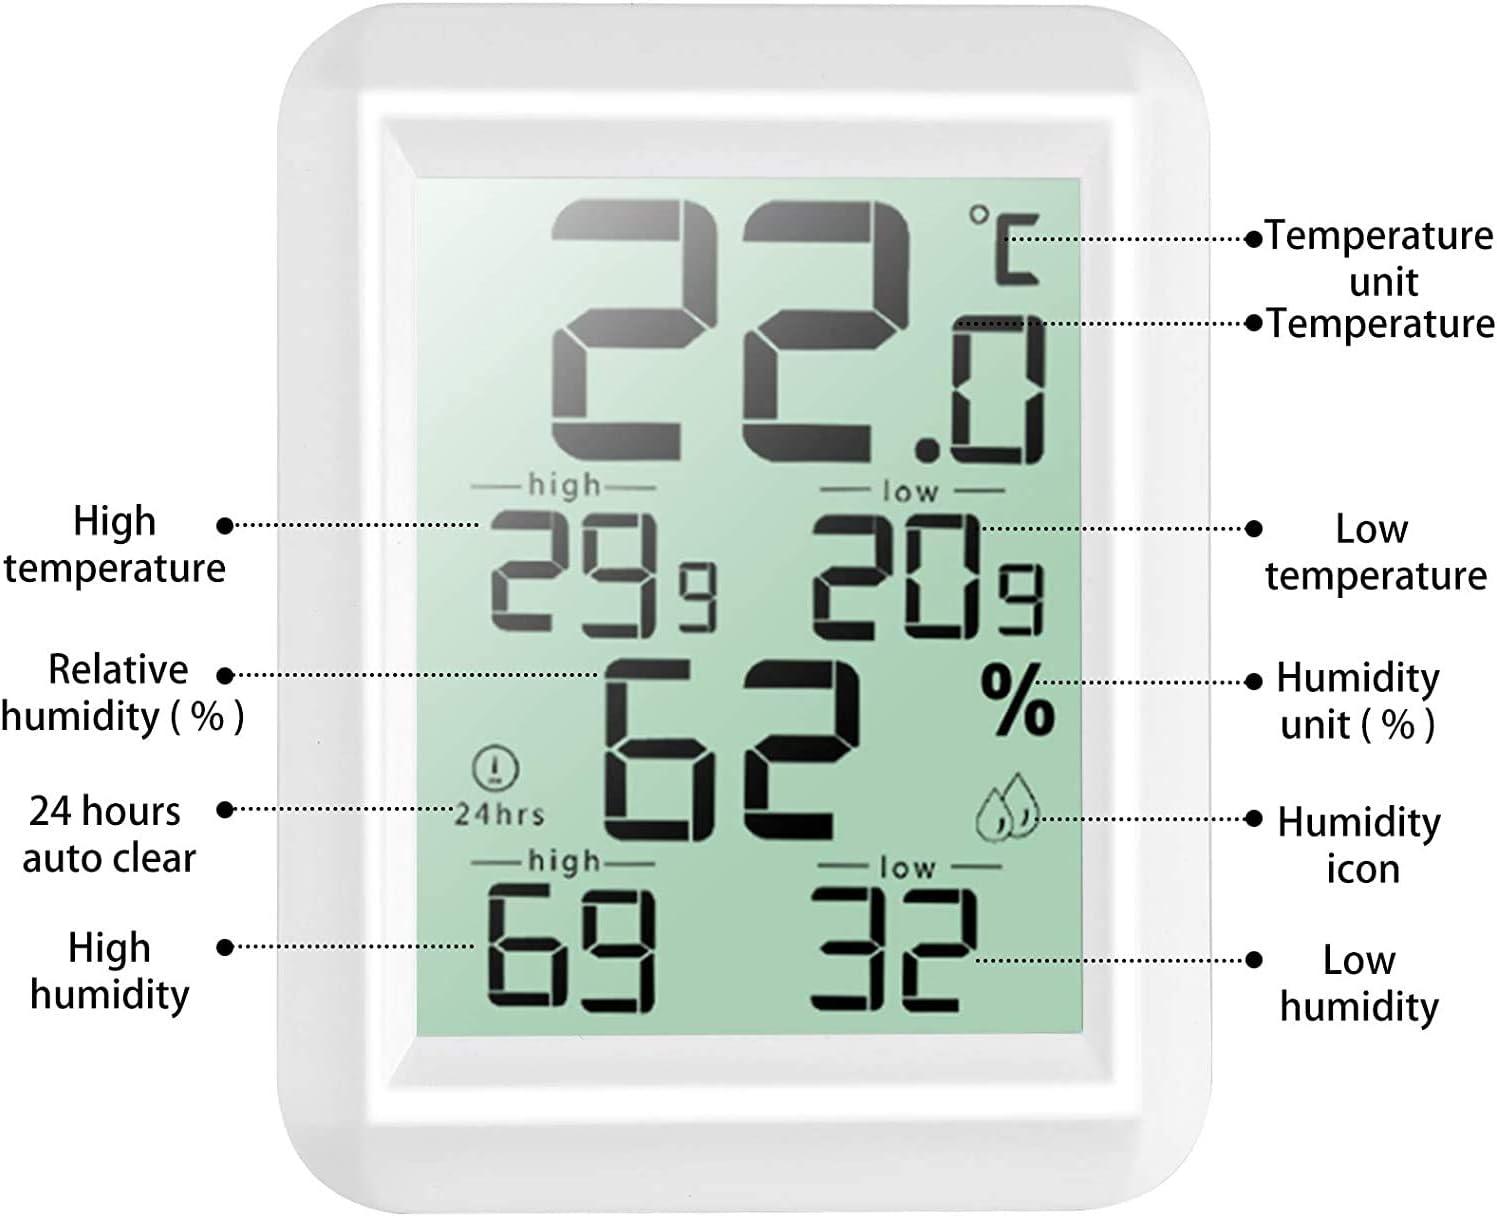 Nhiệt kế kế nội thất nội thất kỹ thuật số cao, ℃/chuyển đổi, hygrometer nhiệt để phát hiện độ ẩm và nhiệt độ, dấu hiệu của mức độ thoải mái của nhà bếp tại nhà